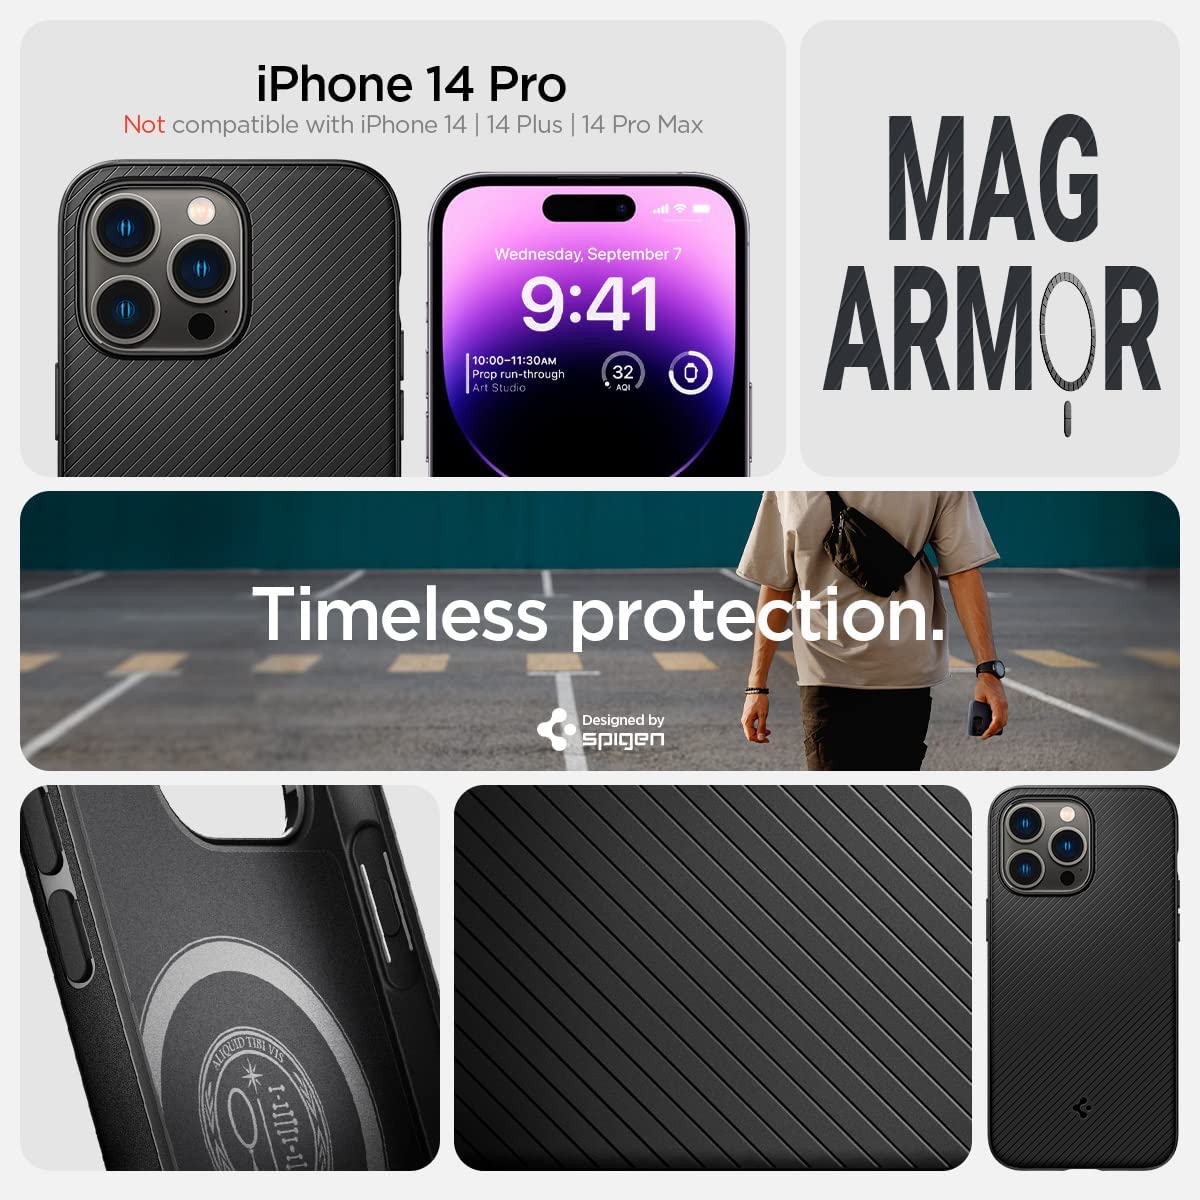 I migliori accessori dedicati ad iPhone 13 e iPhone 13 Pro